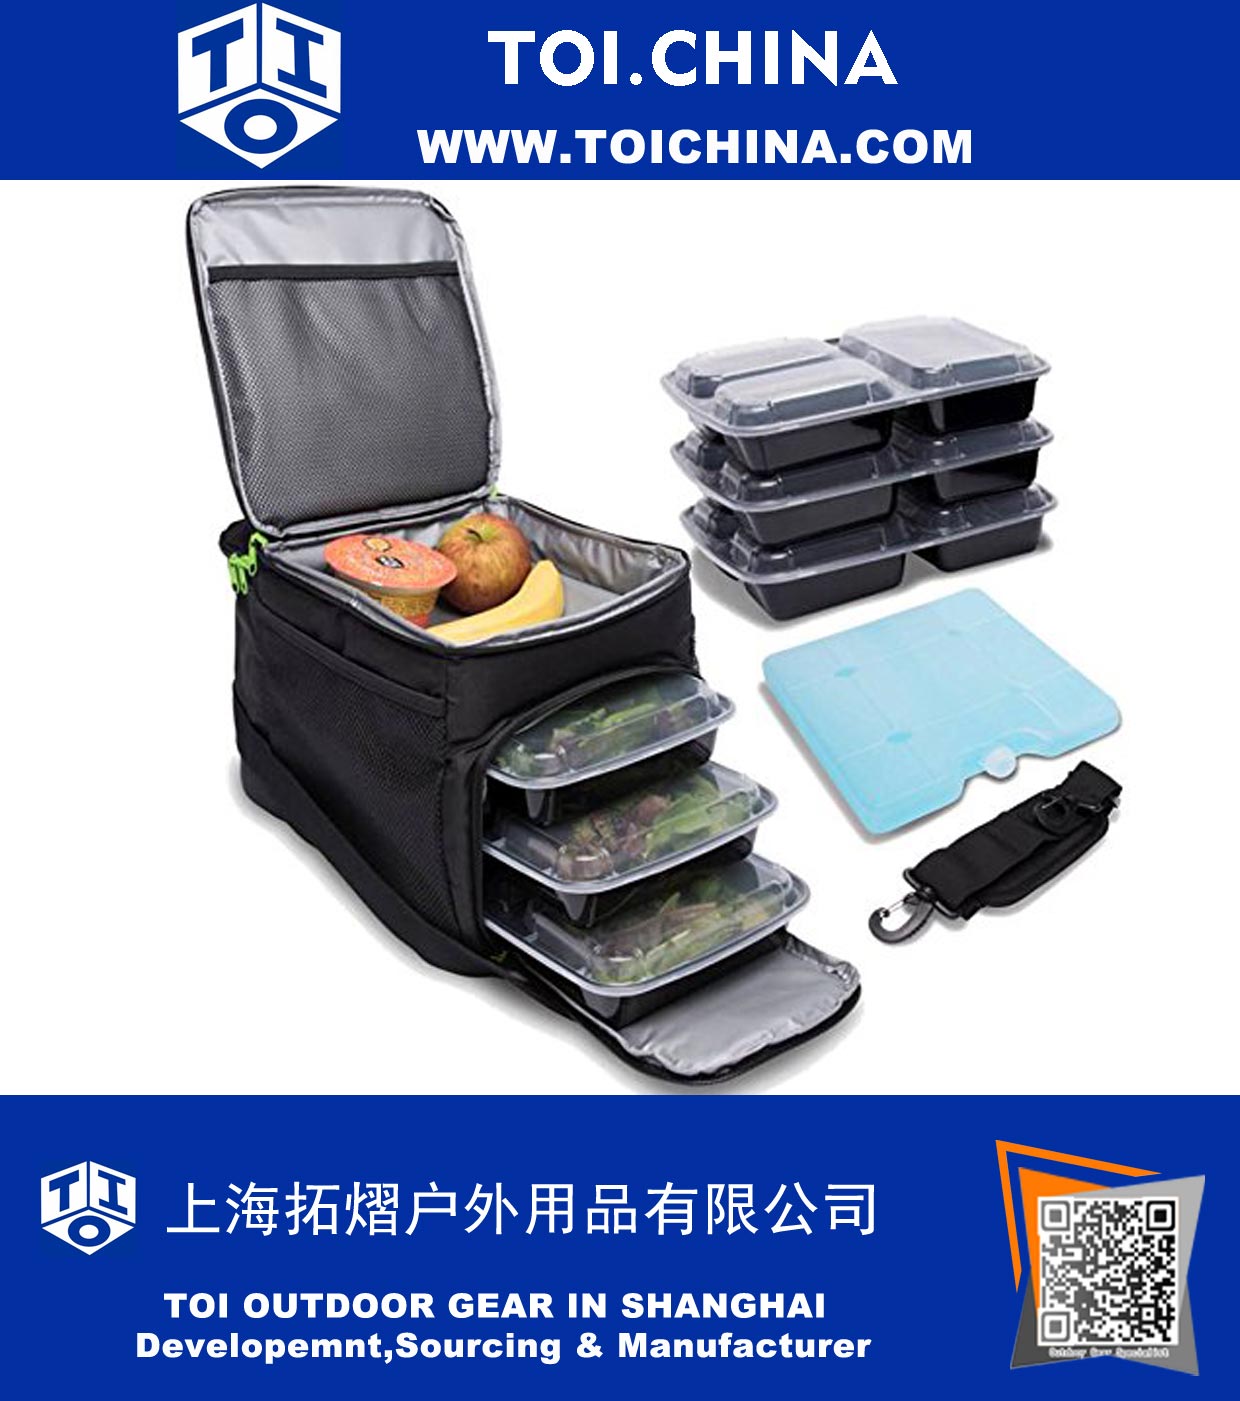 Сумка с большим количеством циклов для еды - изолированный мешок для еды с 6 лотками для контроля порции - идеально подходит как изолированный пакет для завтрака или сумка для управления питанием - портативный компактный дизайн, кемпинг и сумка для п